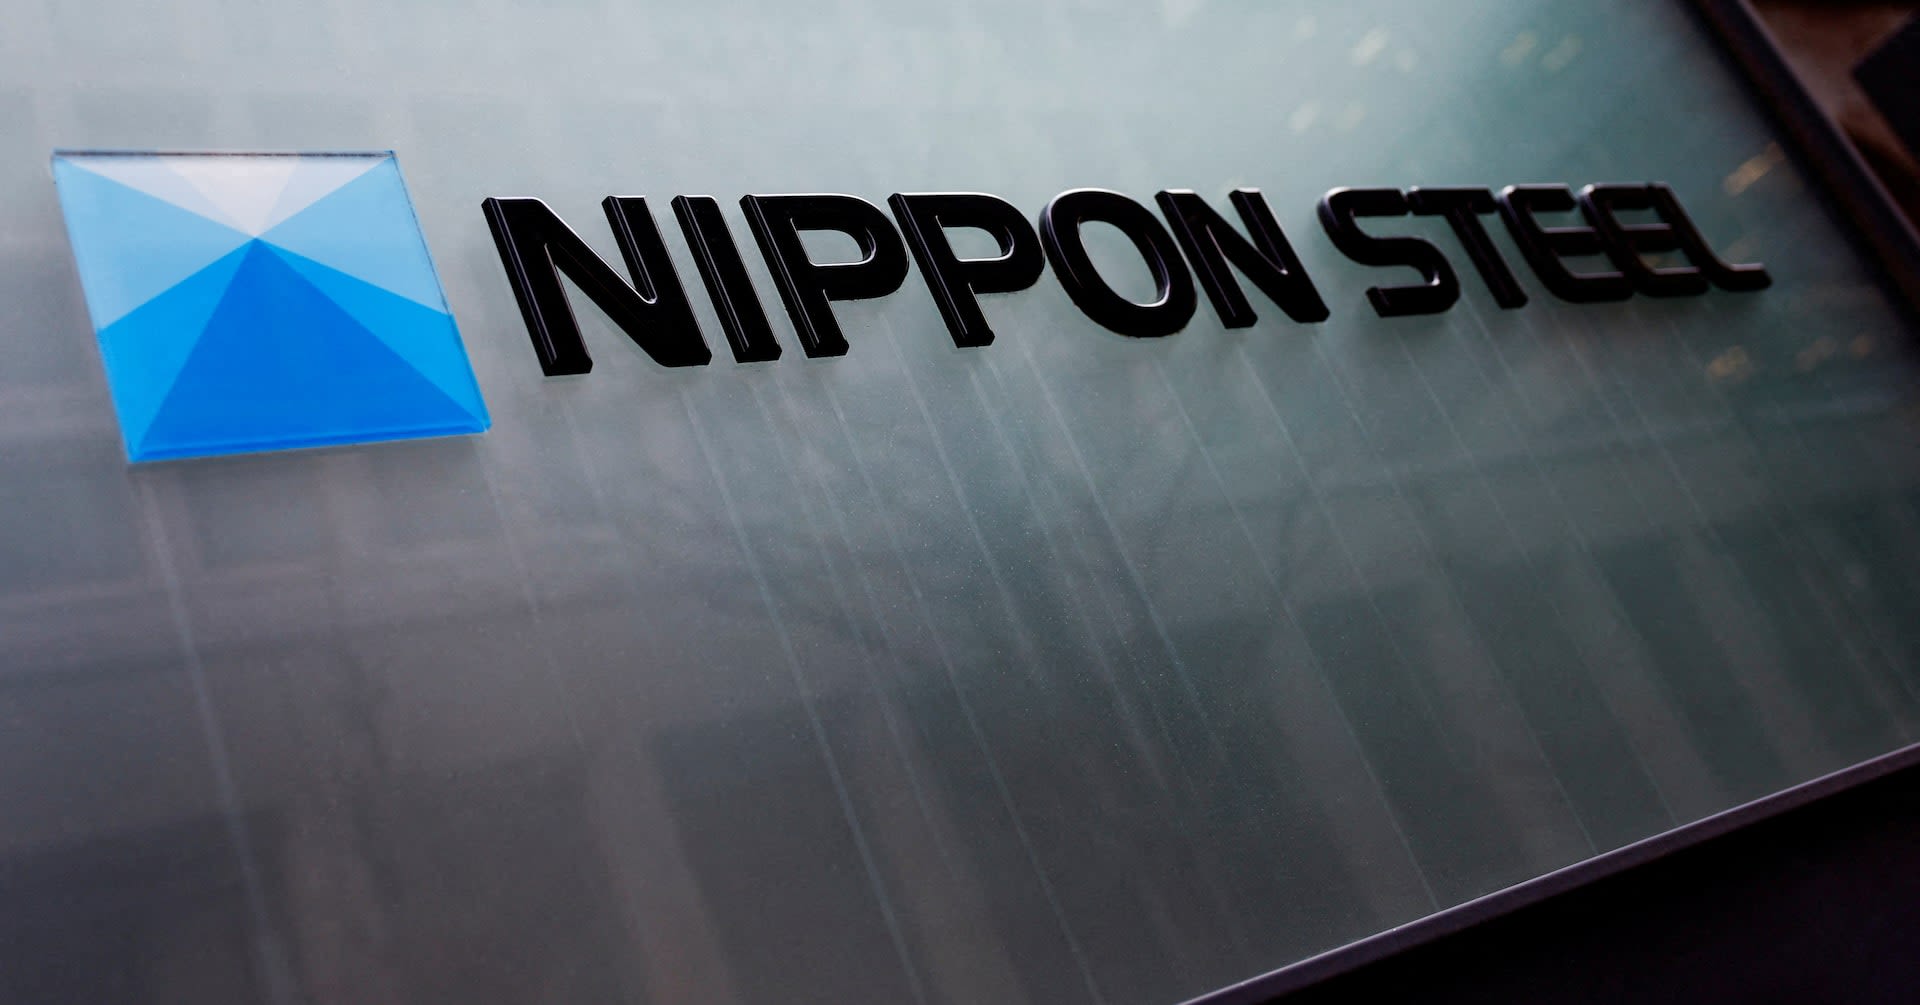 Japan's Nippon Steel raises full-year profit forecast, confident on U.S. Steel deal